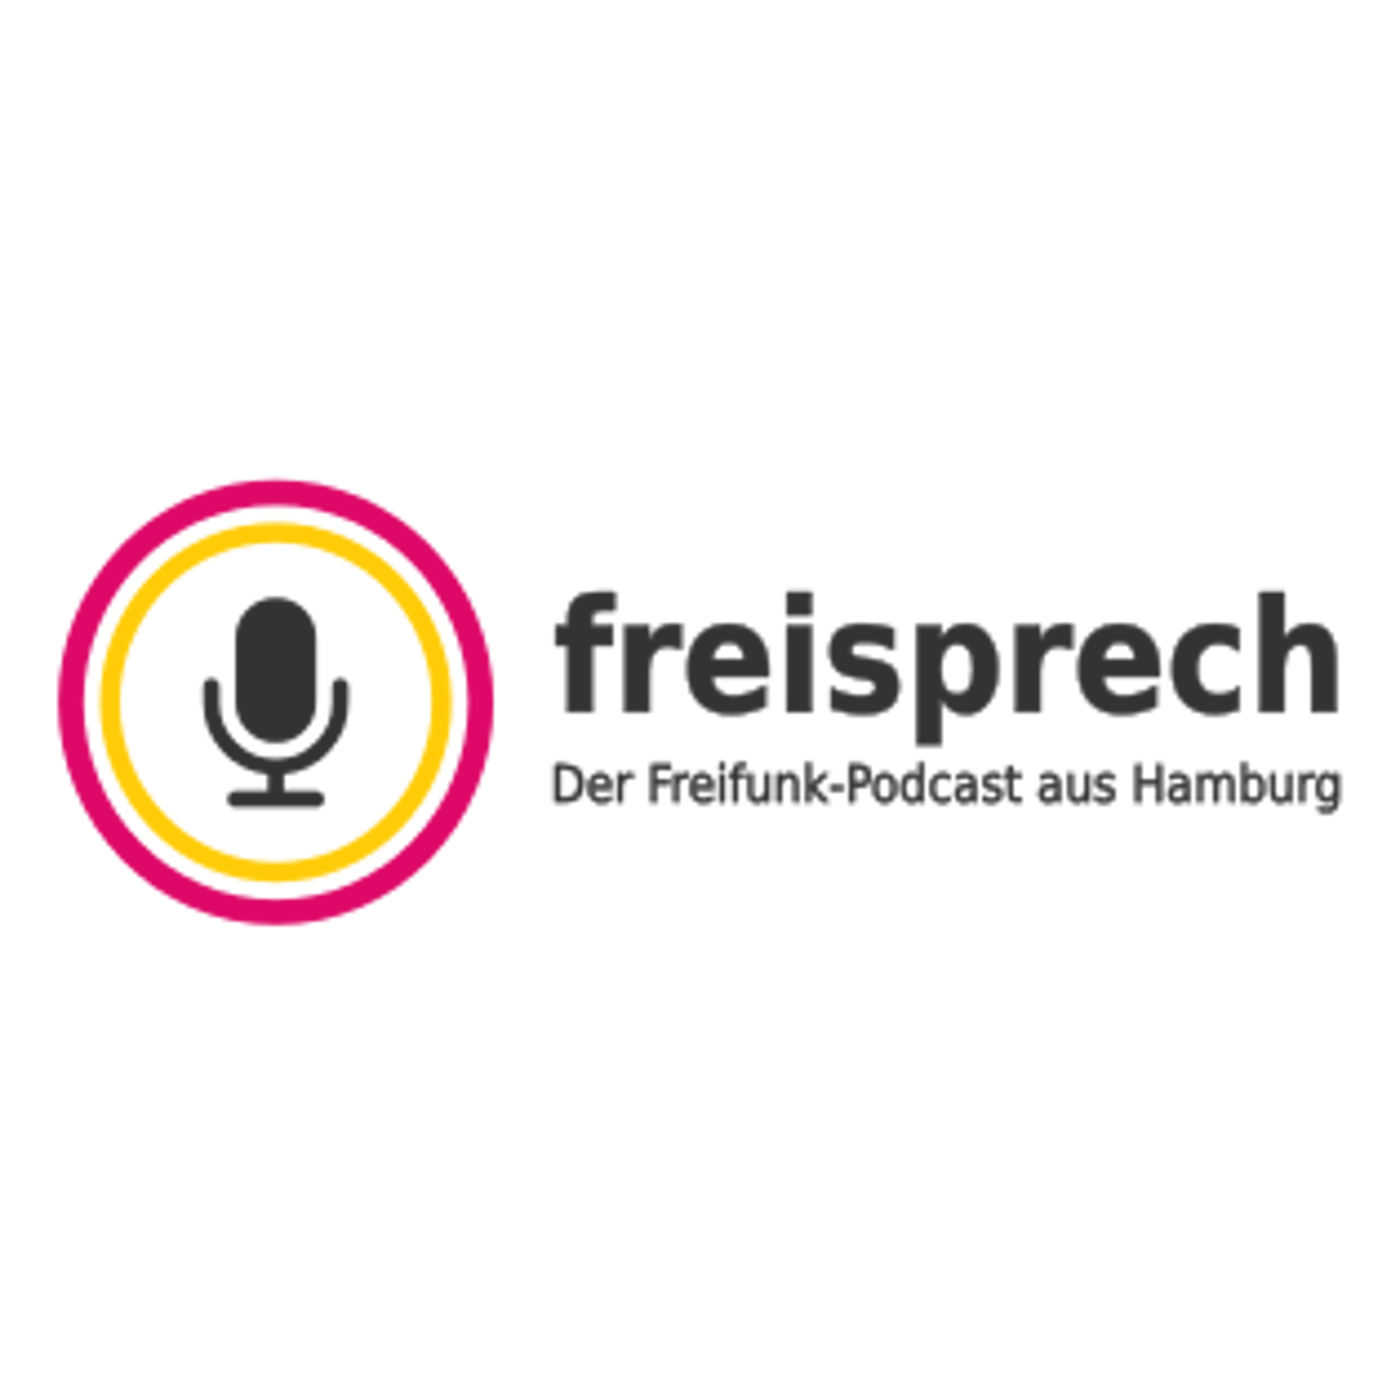 You are currently viewing Freisprech 06: freifunk.net, 30C3 und gluon